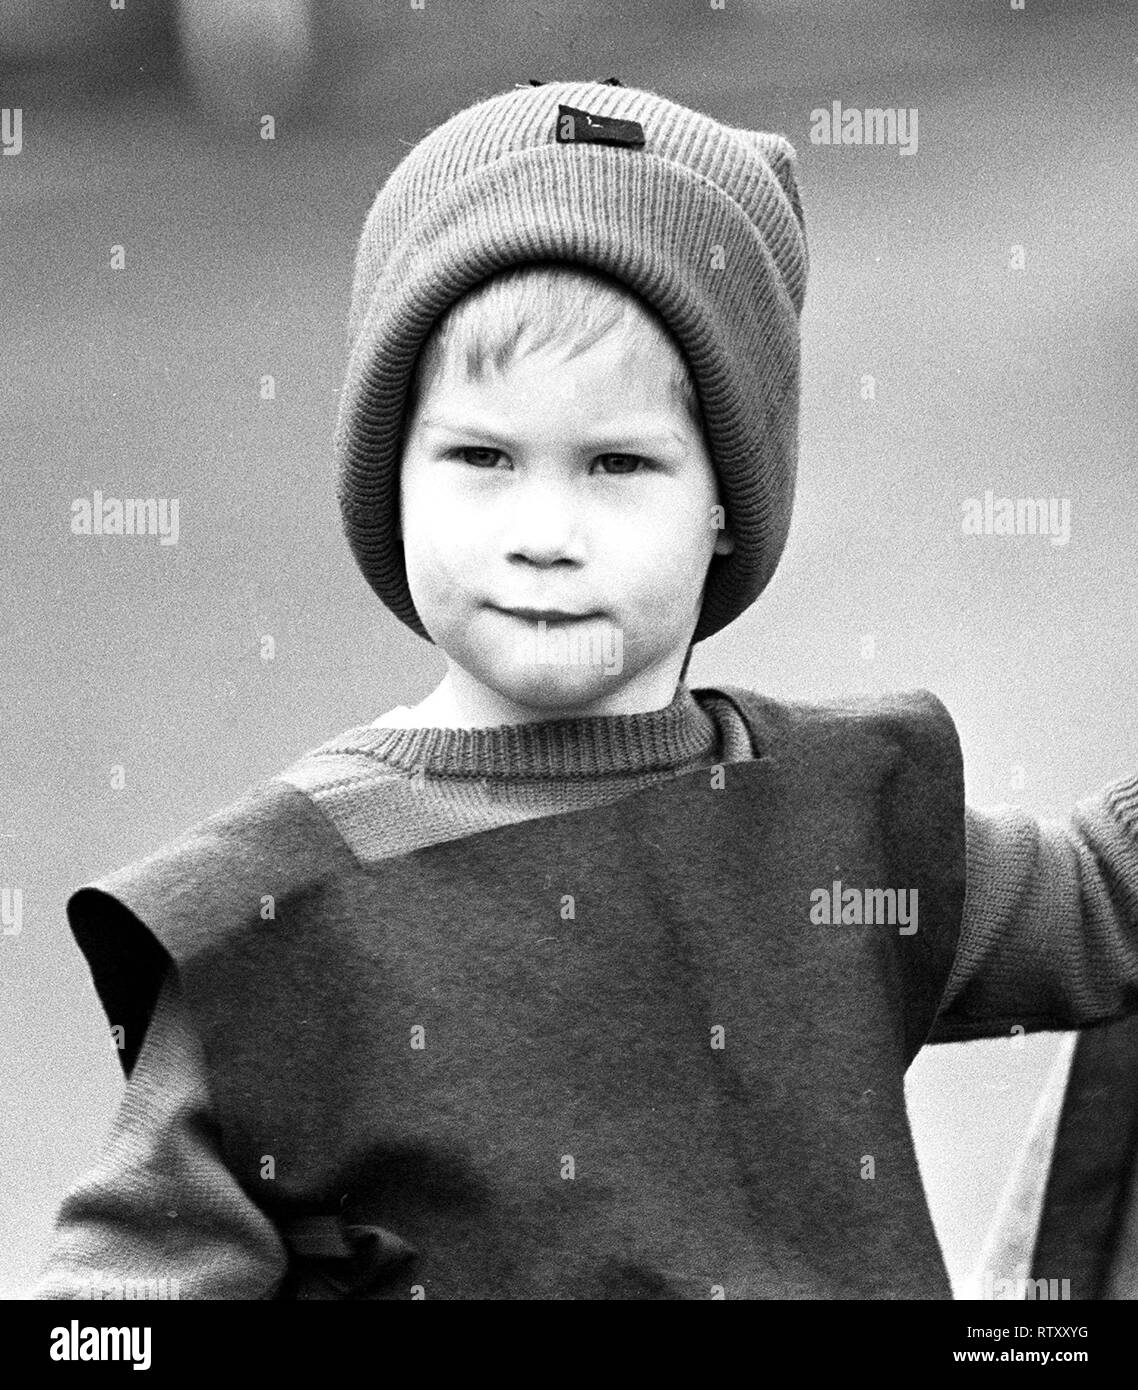 Foto vom 09/12/87 der Prinz Harry kommt an seinen privaten Kindergarten in Notting Hill in Pixie - wie Gewand in Vorbereitung auf die Schule der Krippenspiel. Der Herzog von Sussex war eine kuschelige Kind, das furchtlos und freundlich sogar an einem jungen Alter. Stockfoto